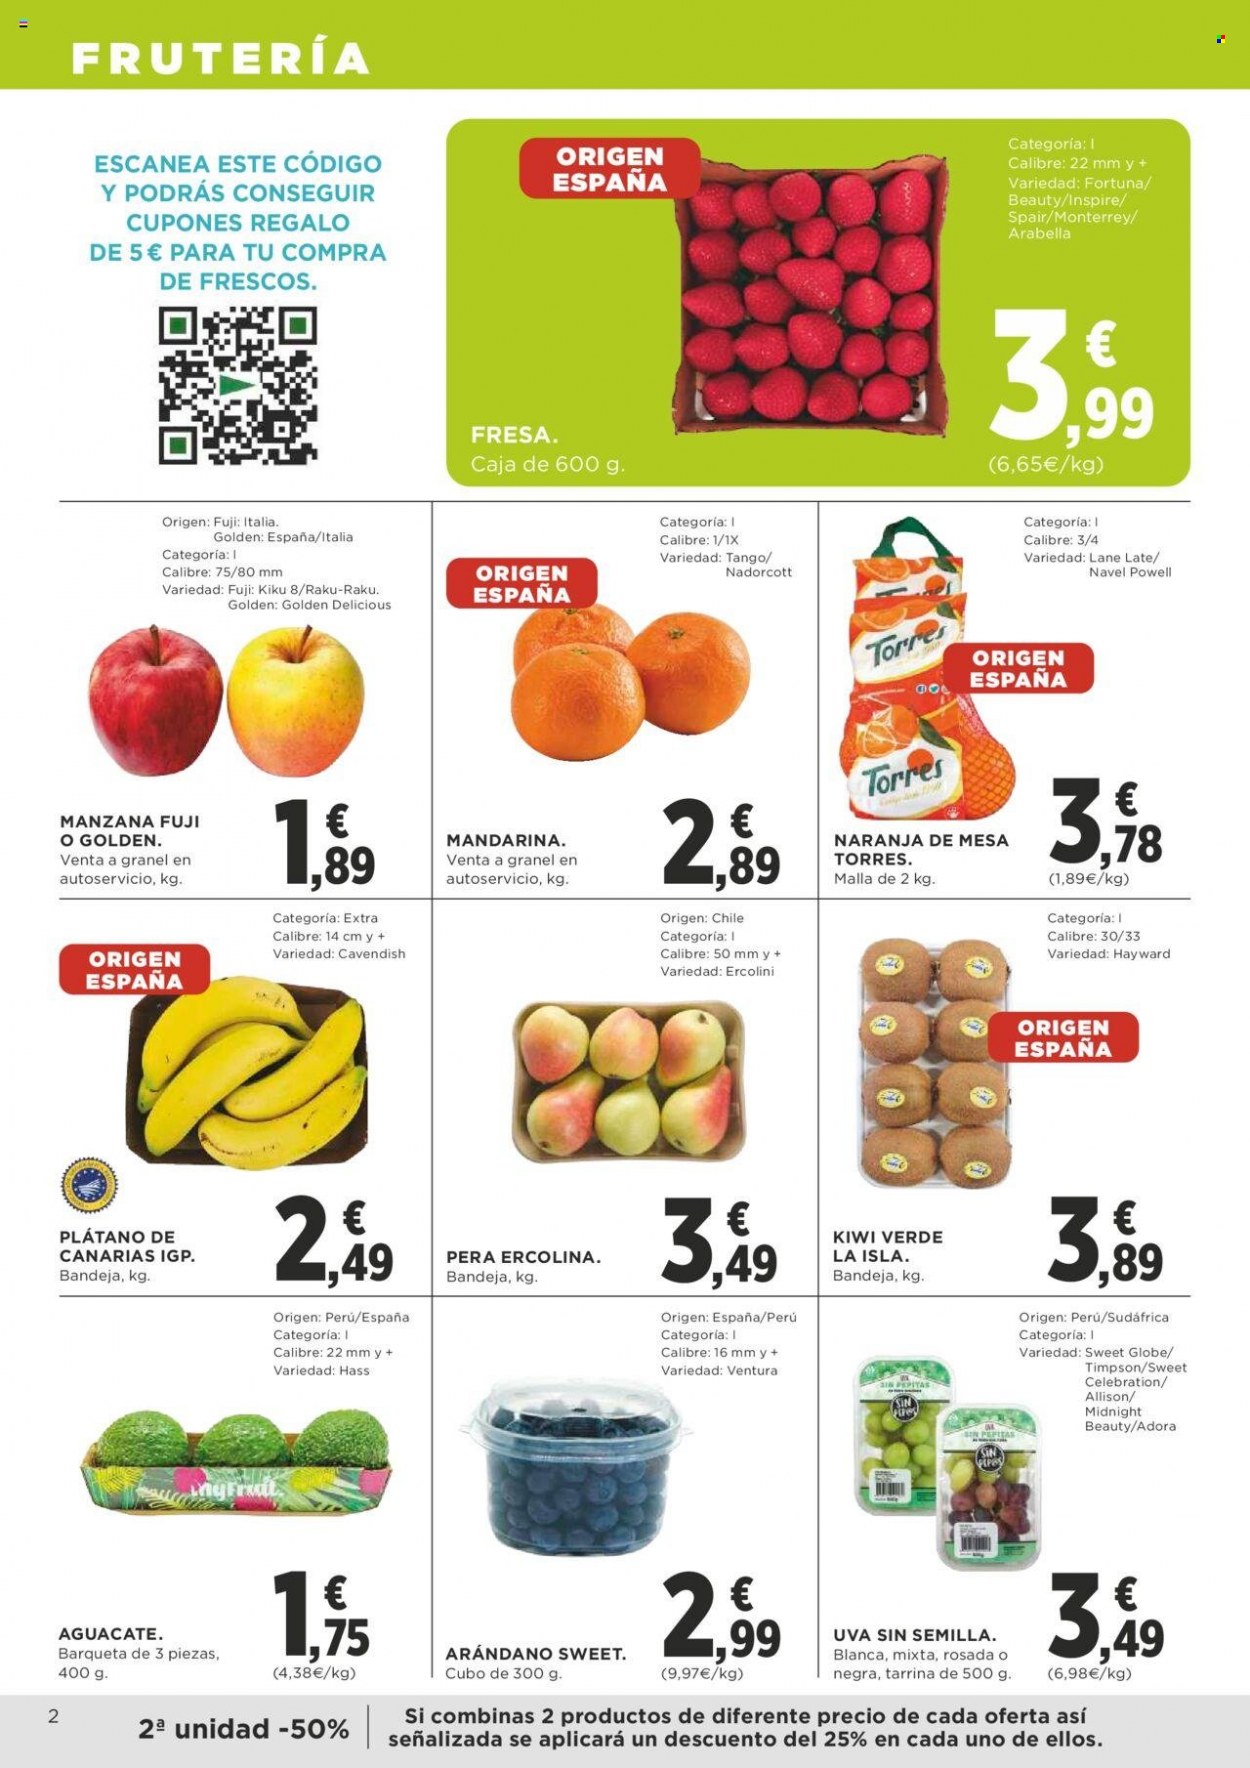 thumbnail - Folleto actual Supercor supermercados - 09/03/23 - 22/03/23 - Ventas - pera, uva, kiwi, aguacate, arándano, fresa, mandarina, manzanas. Página 2.